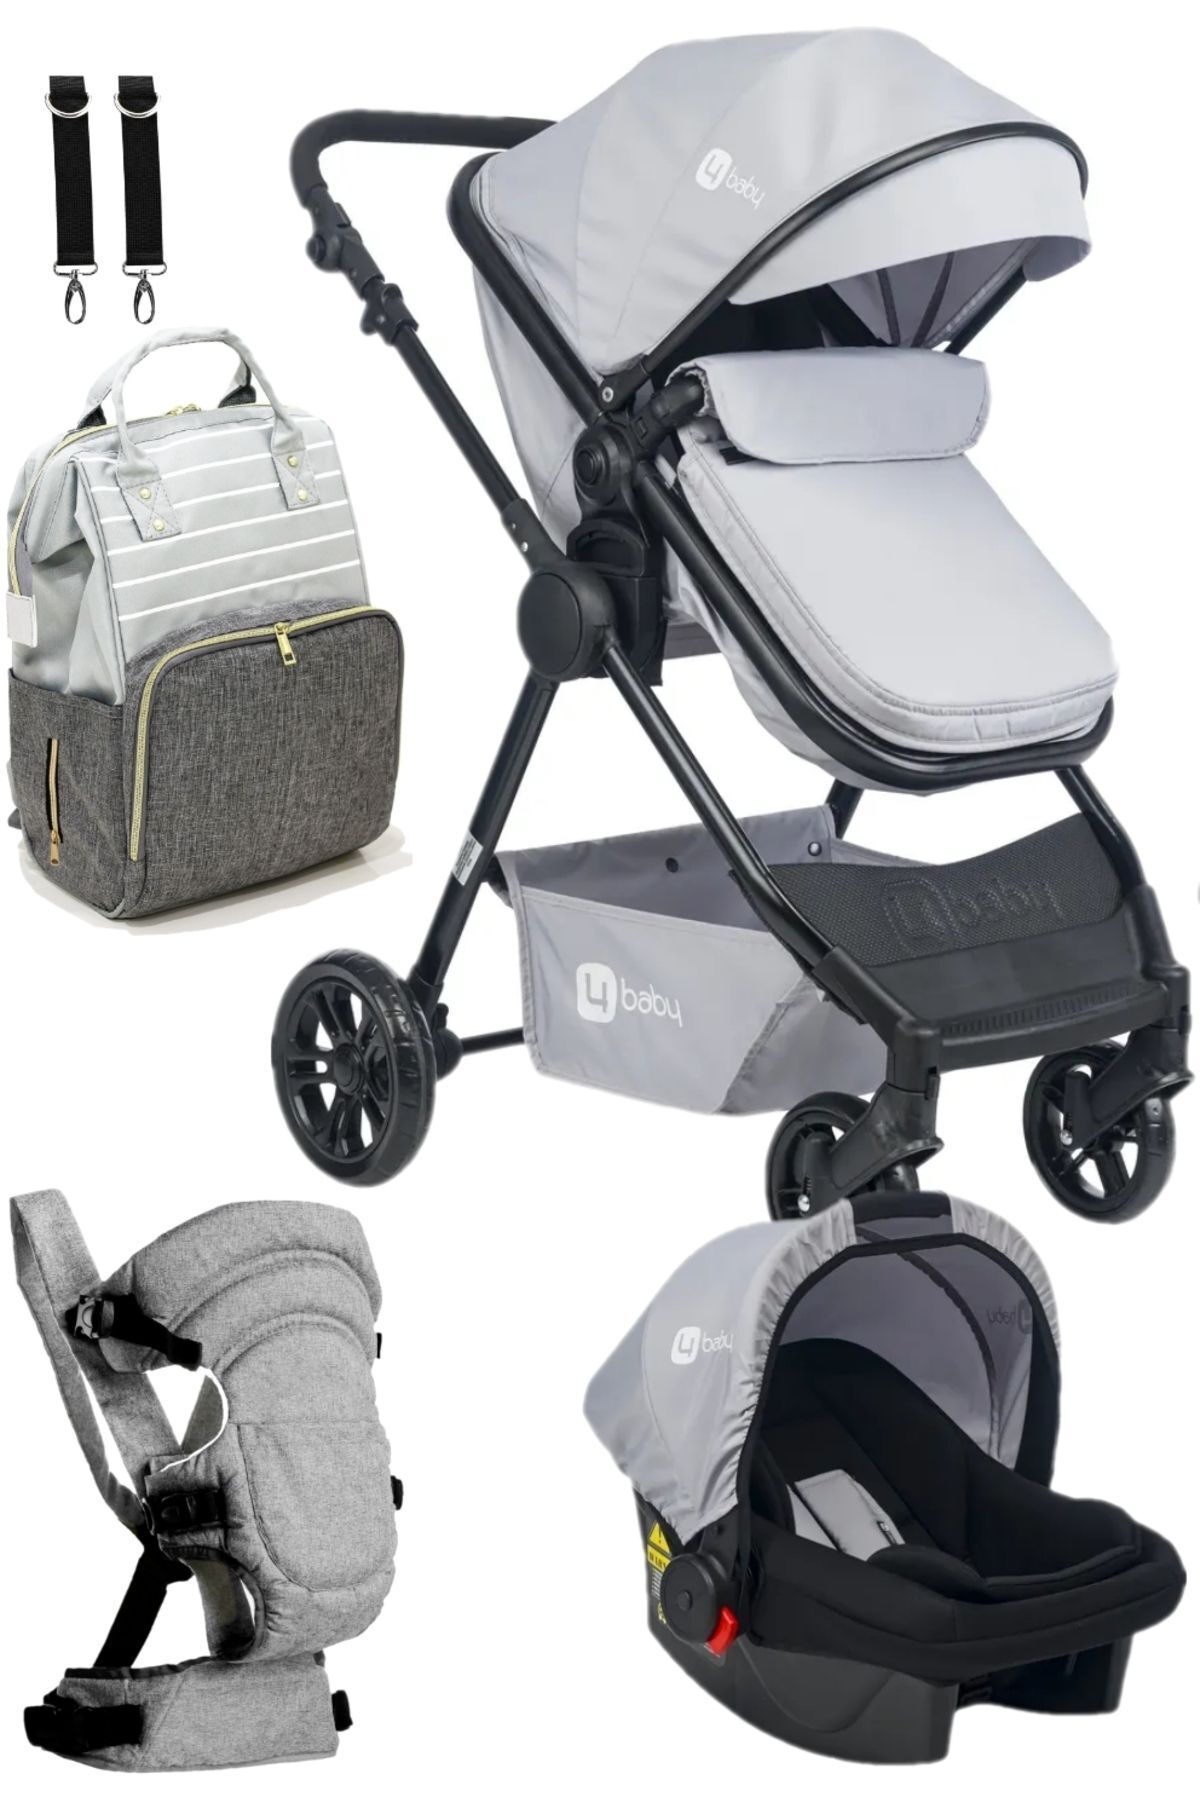 4 Baby Travel Sistem Bebek Arabası ve Çeyiz Seti , Bebek Bakım Çantası ve Kanguru Seti